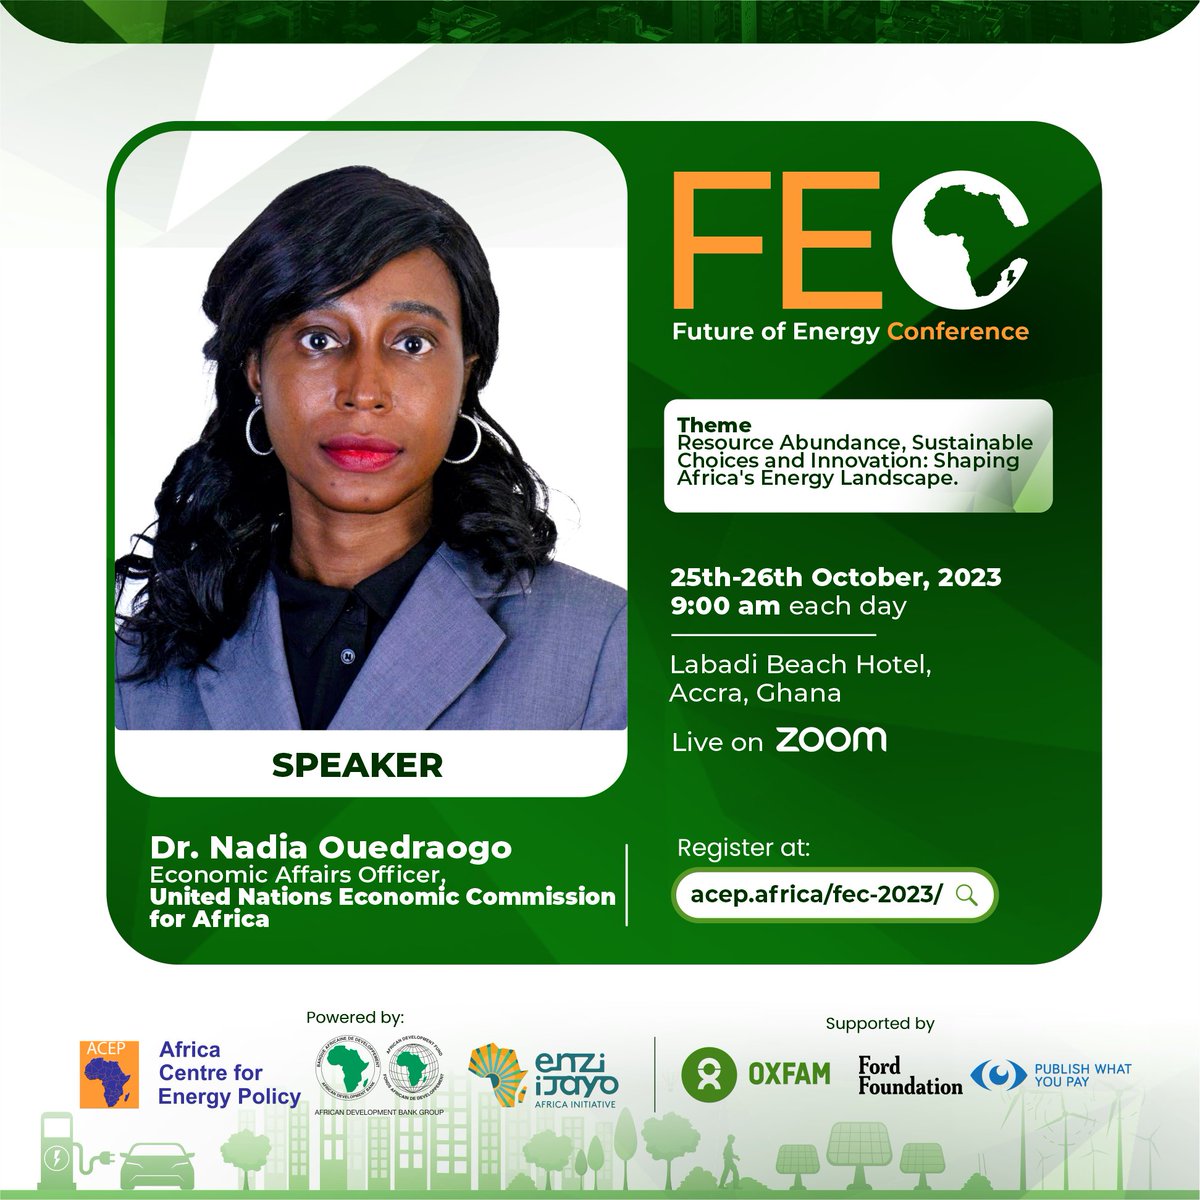 Register now ➡️ acep.africa/fec-2023/ #ACEP #FEC2023 #FutureofEnergy